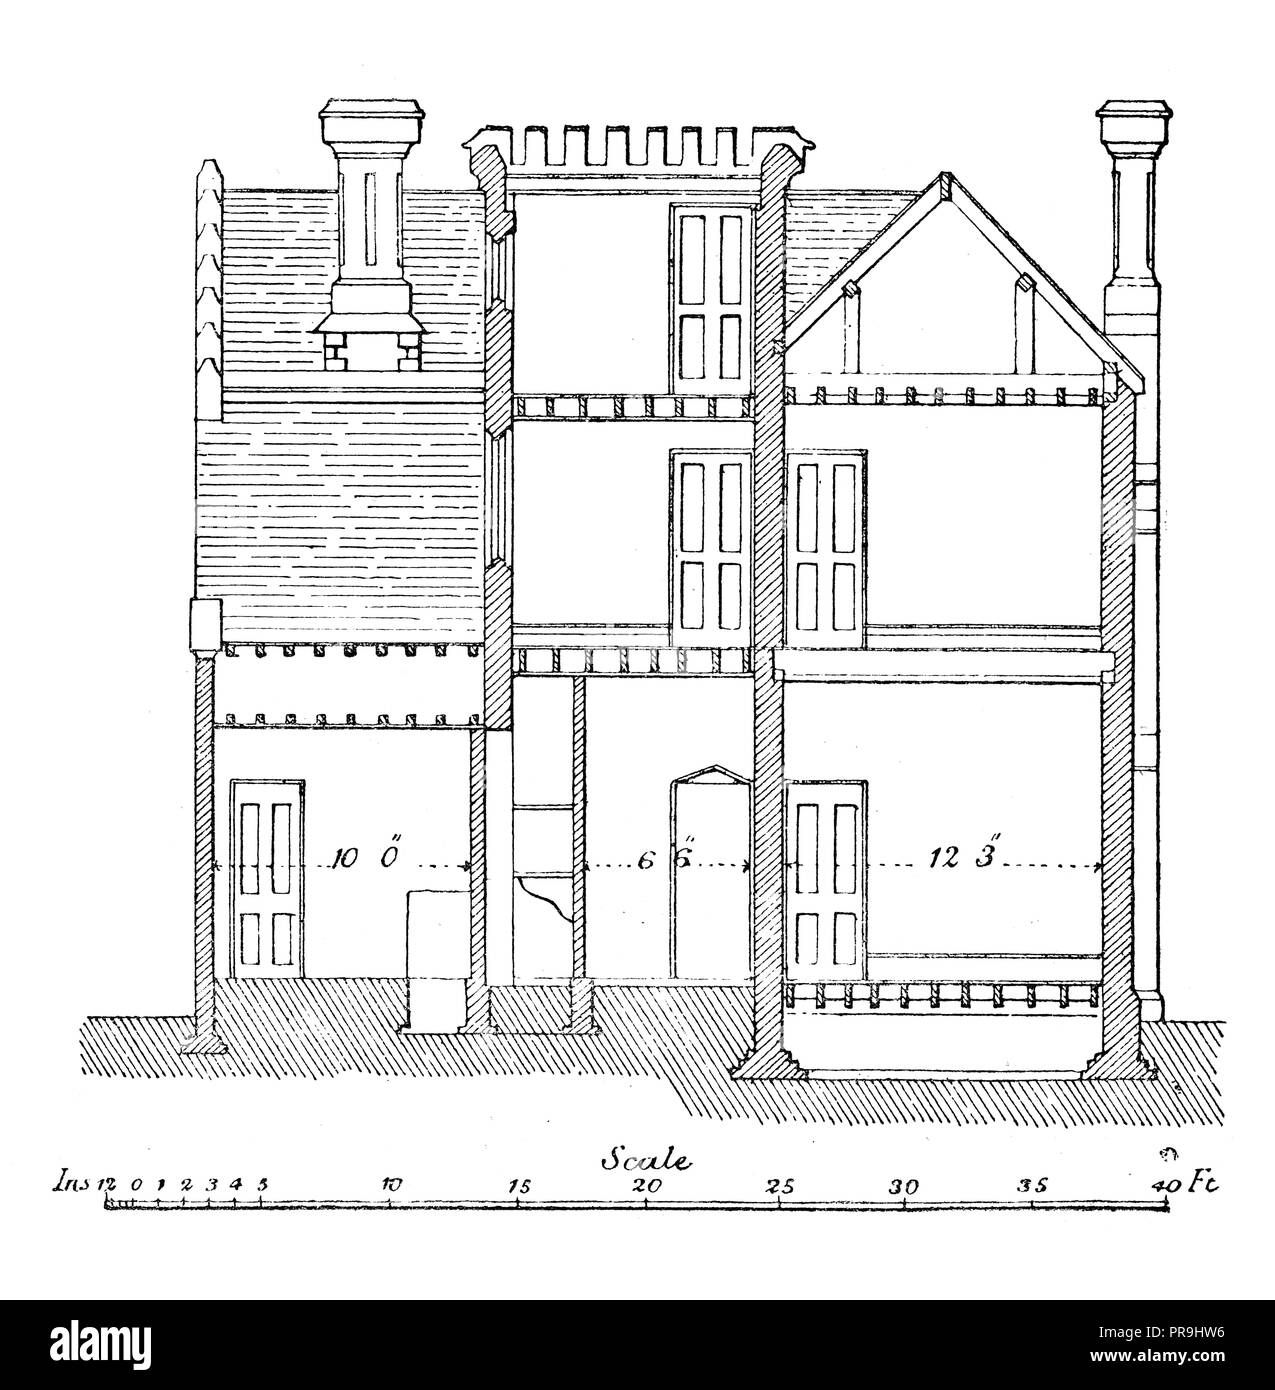 19ème siècle Illustration d'une section transversale d'un chalet dans le quartier gothique ou le style Tudor. L'architecture de style Tudor est la dernière devel Banque D'Images